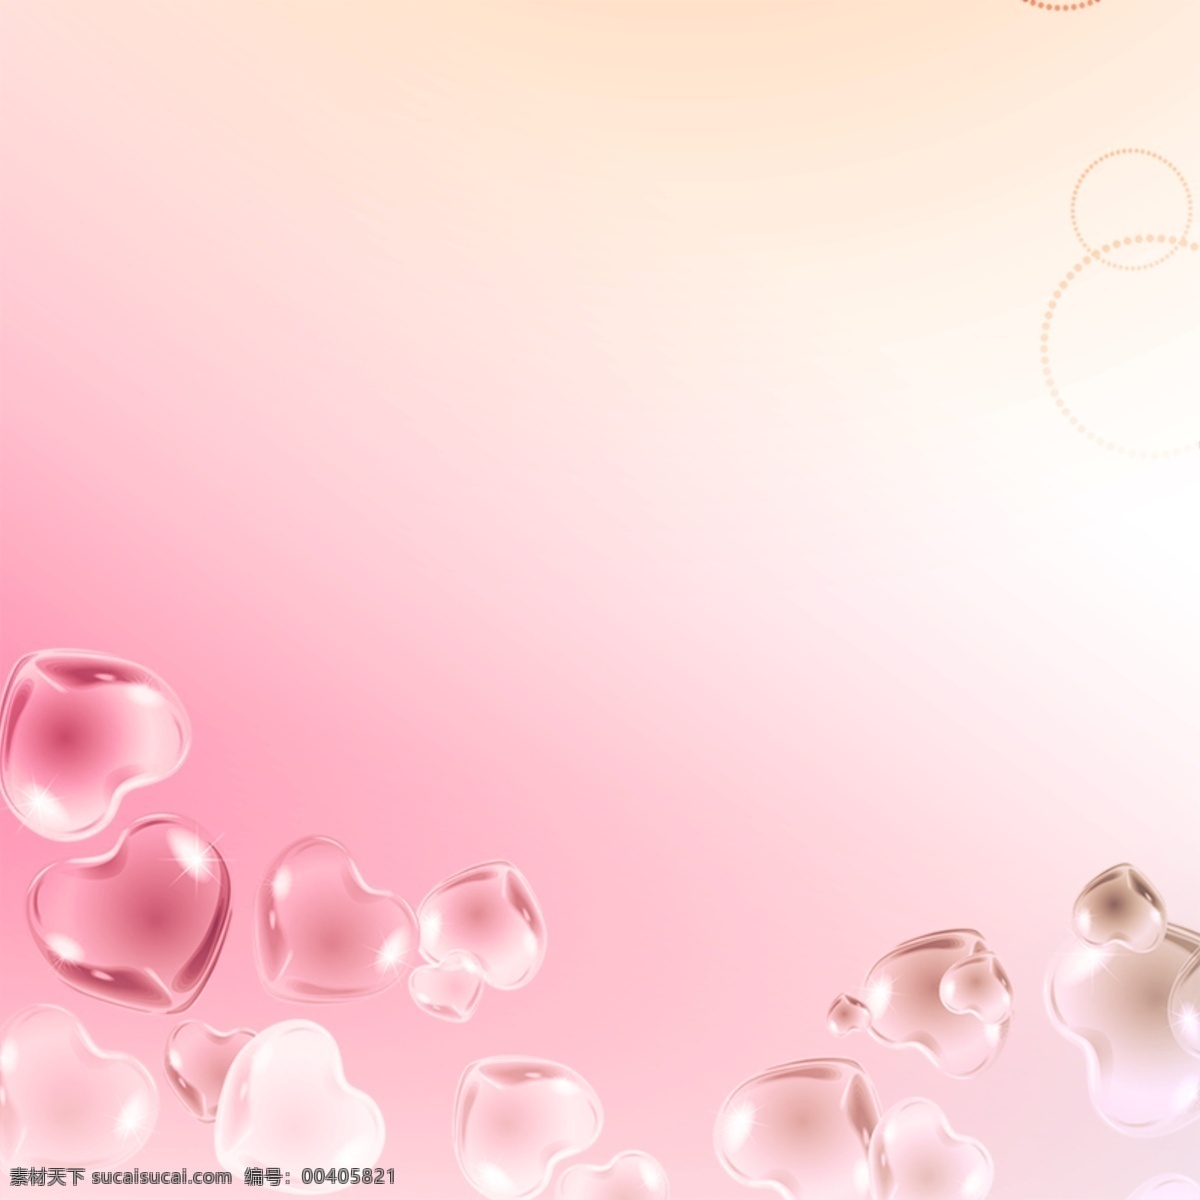 浪漫背景 爱心 水晶爱心 浪漫 情人节背景 粉色背景 白色